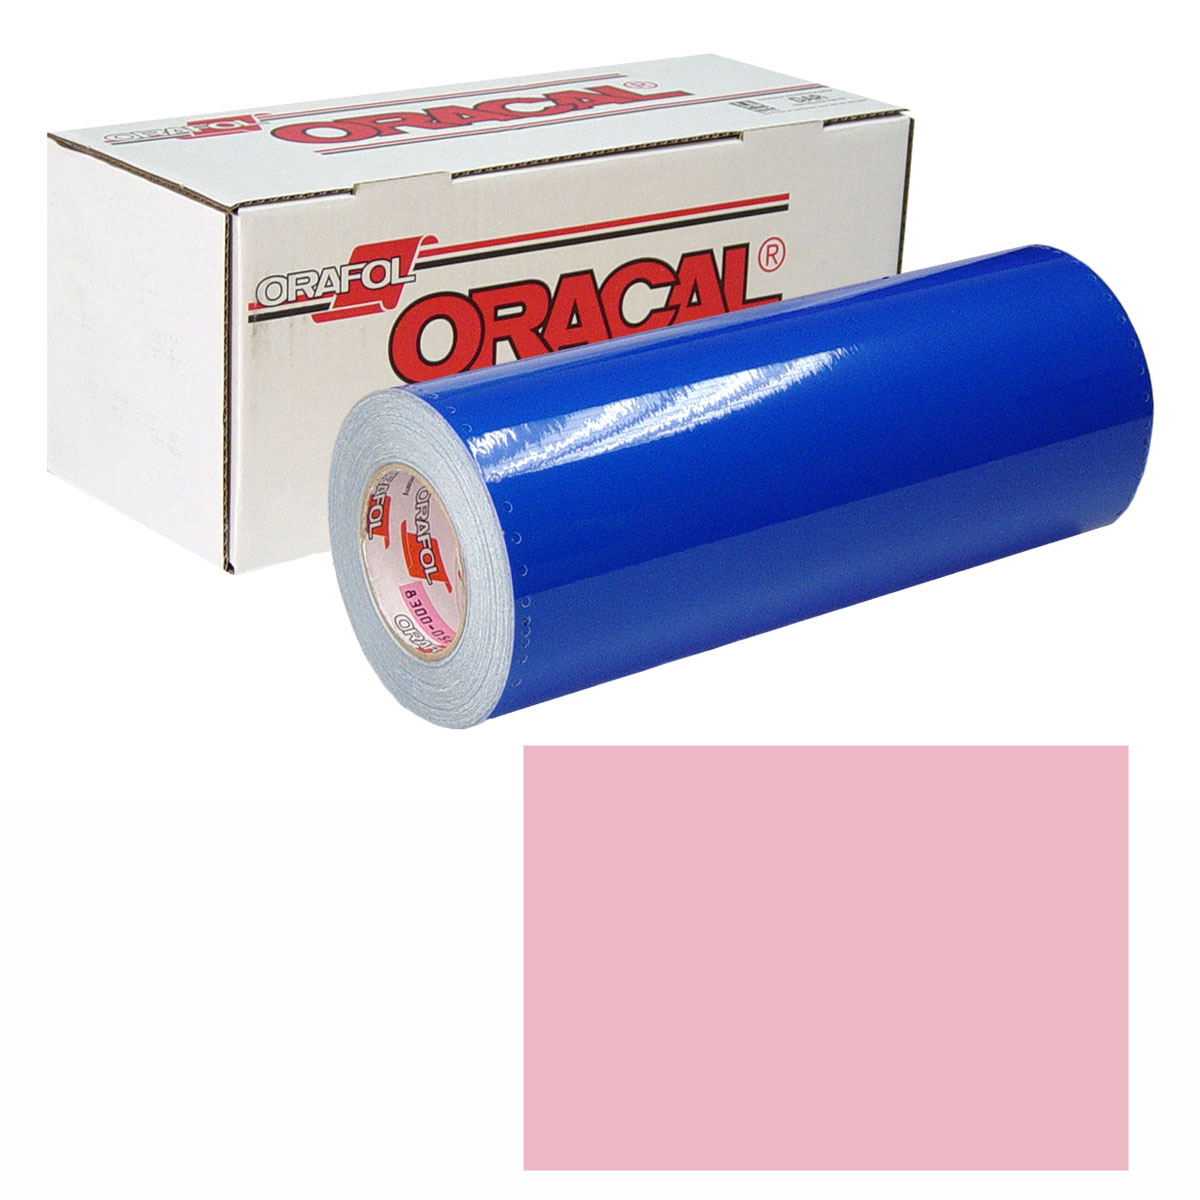 ORACAL 631 Unp 48in X 10yd 429 Carnation Pink